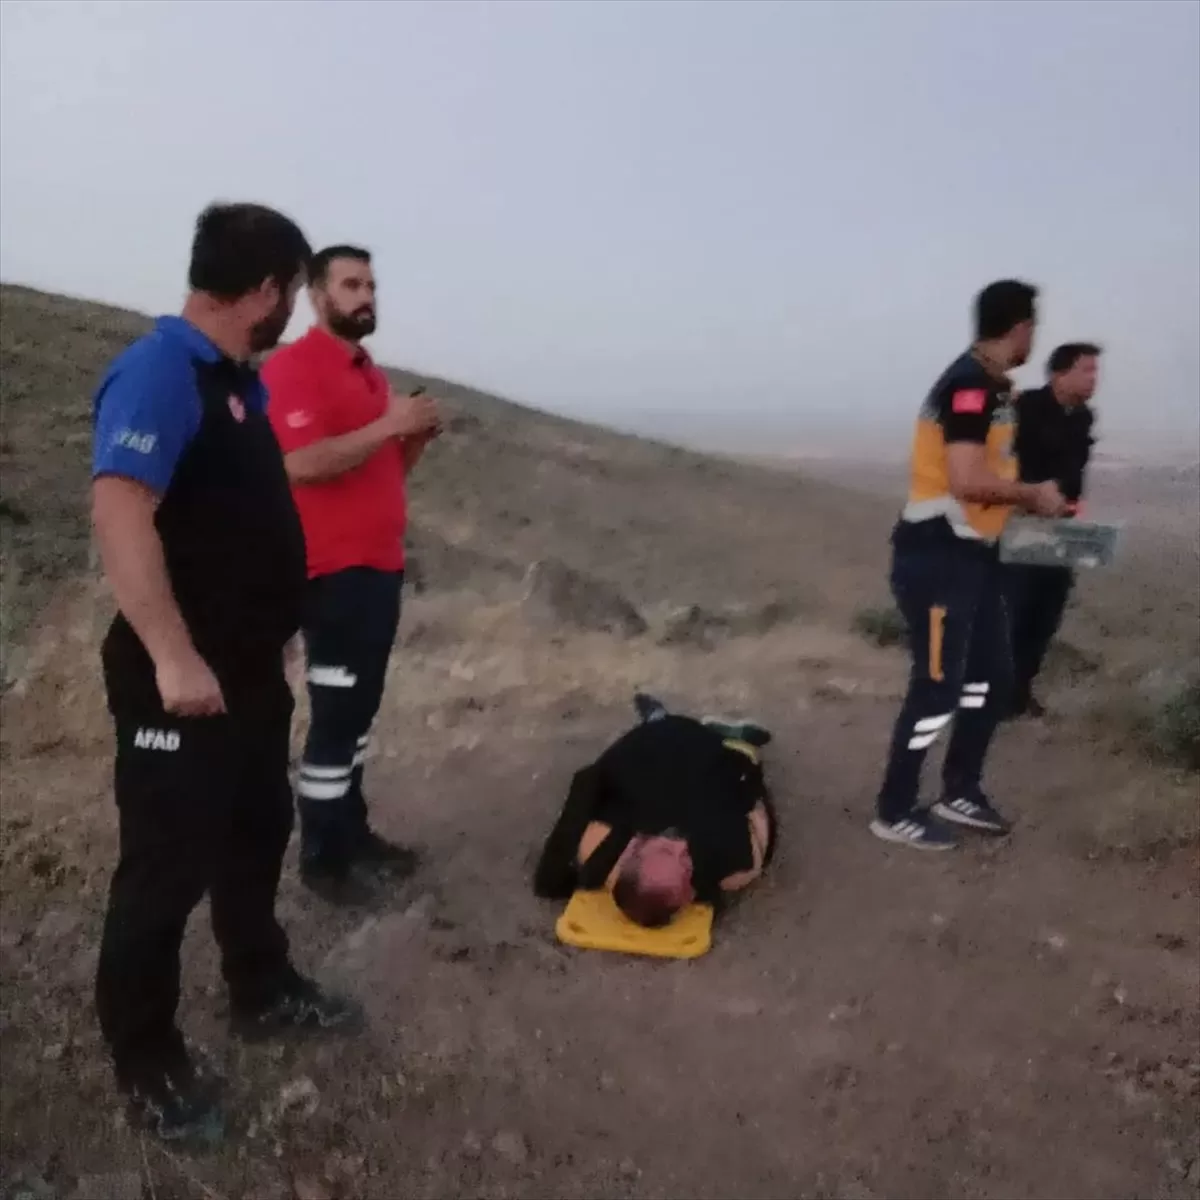 Konya'da dağlık alanda yaralanan kişi askeri helikopterle kurtarıldı